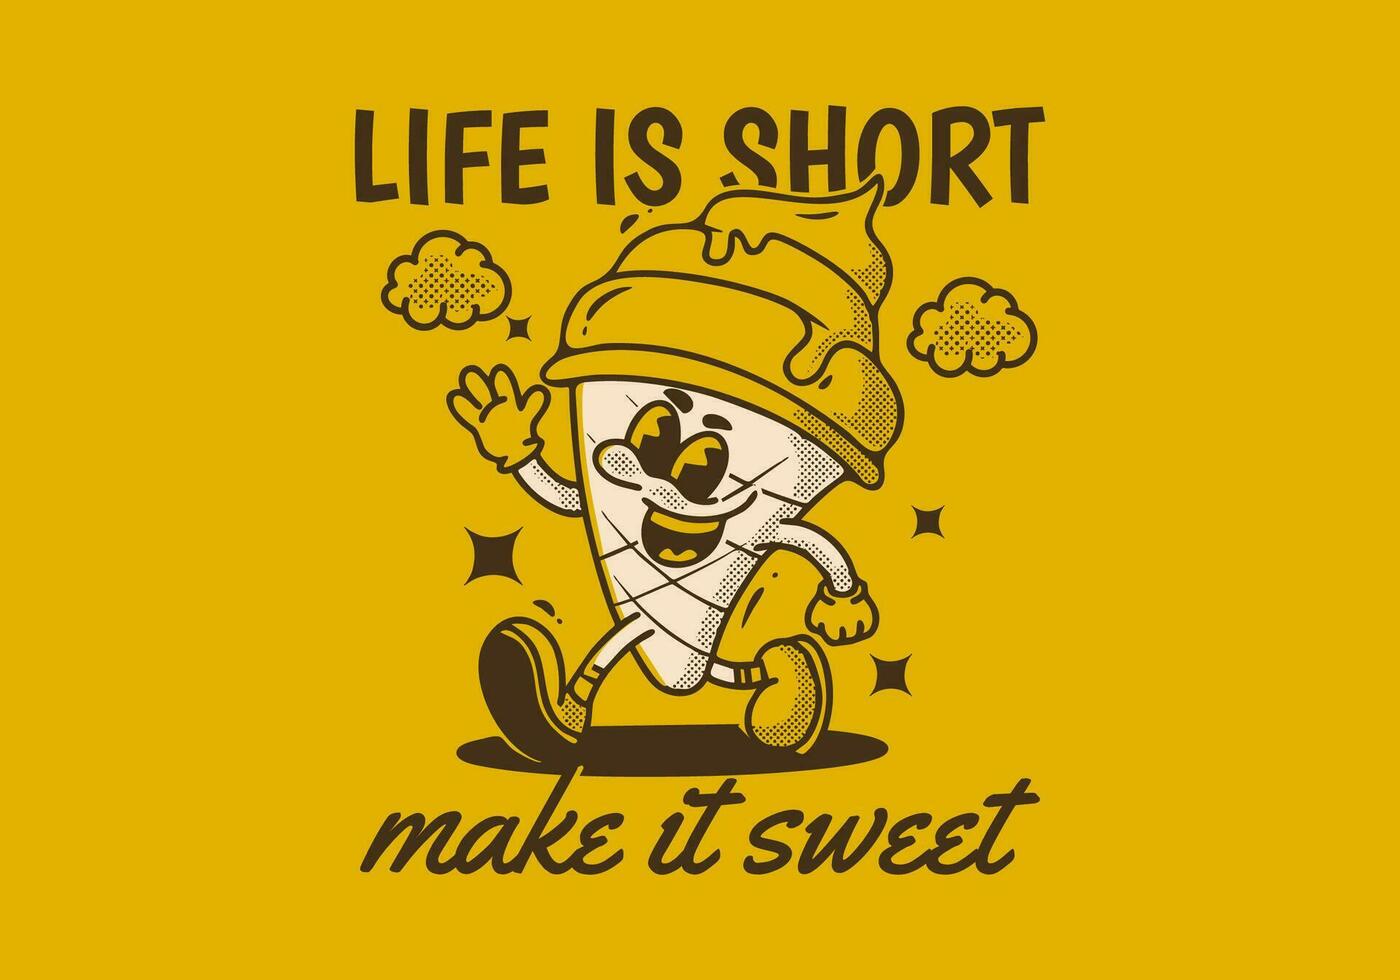 vida es corto, hacer eso dulce. mascota personaje ilustración de caminando hielo crema vector